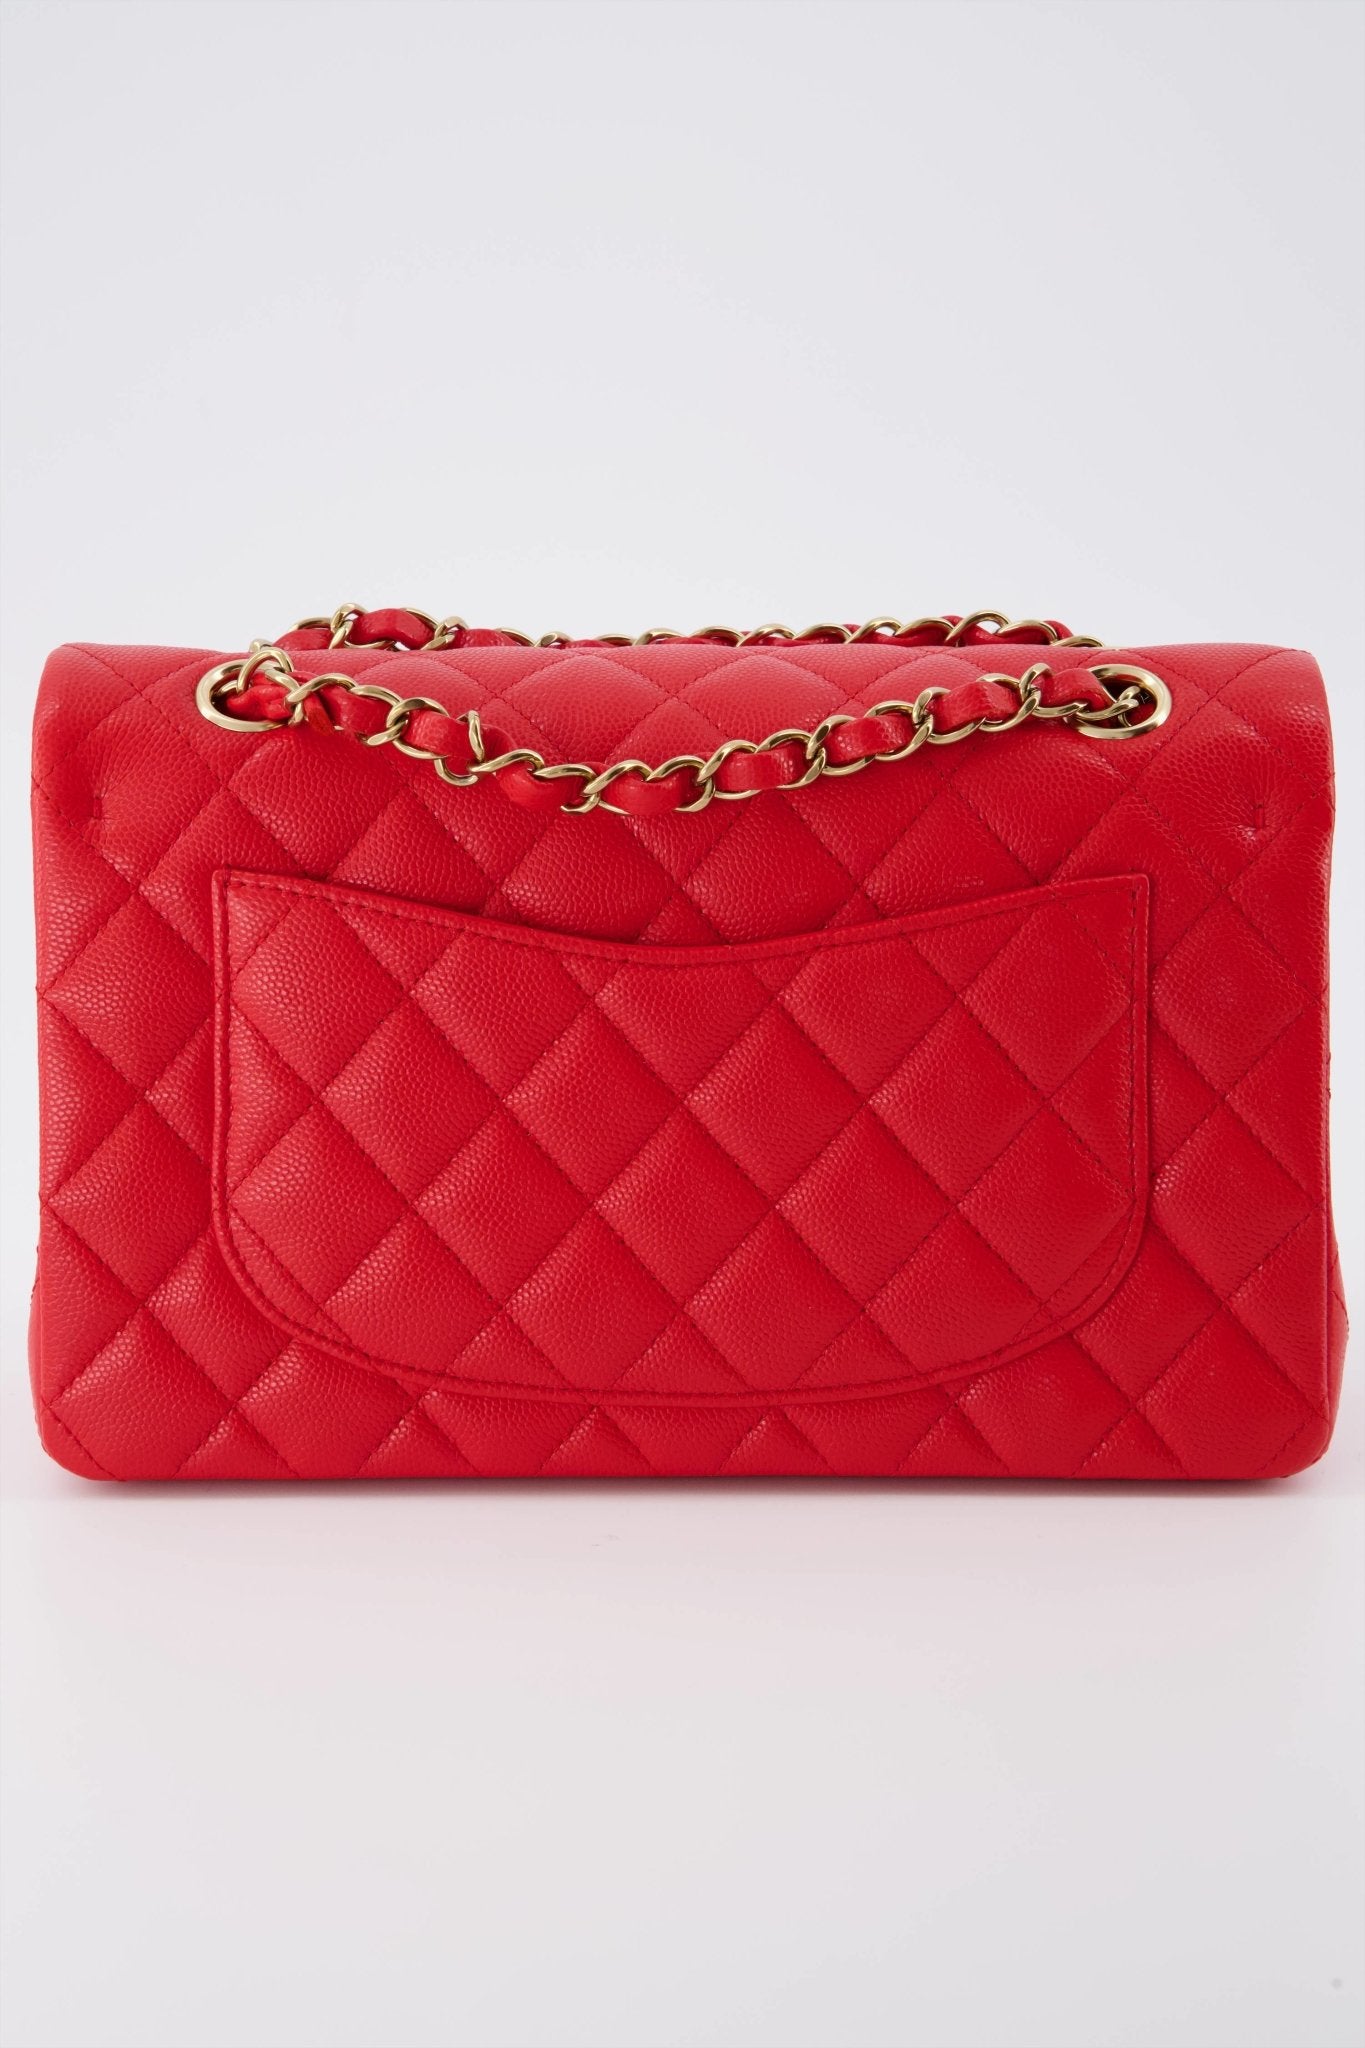 Chanel Classic Flap Bag  Chanel classic flap bag, Fashion bags